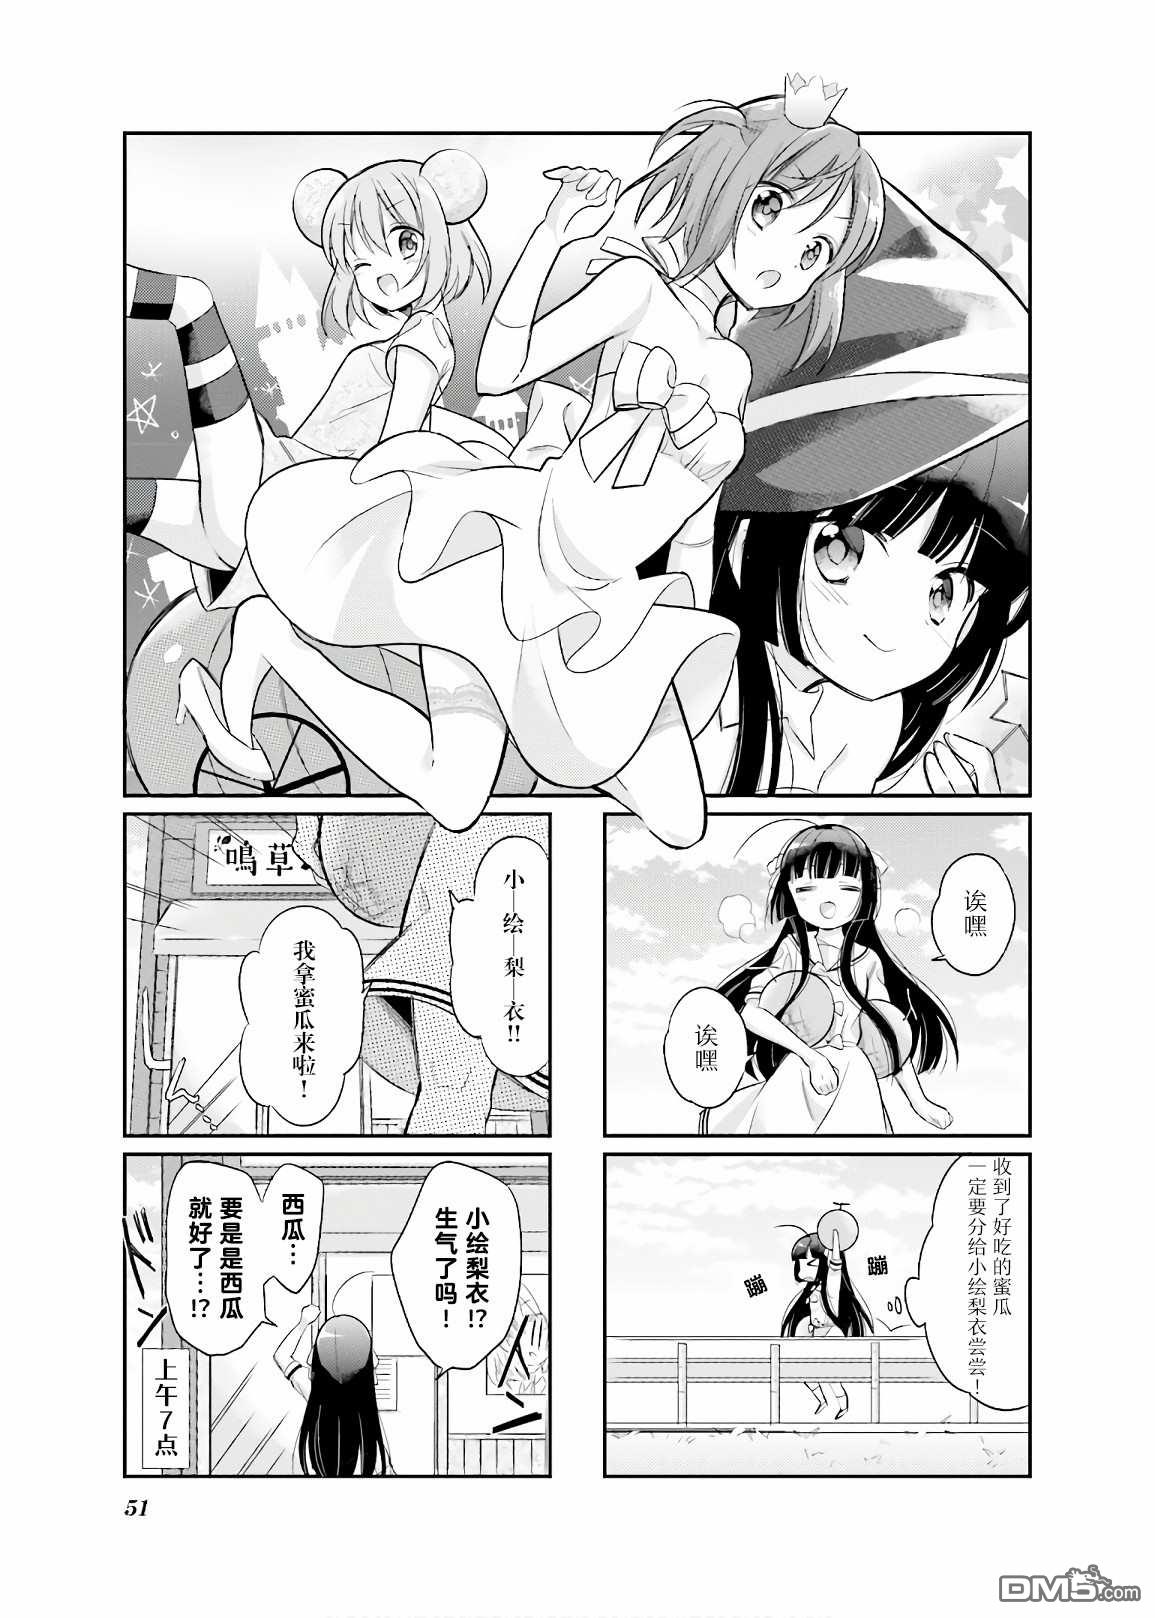 《沉迷百合漫画的咲星大小姐》第6话第1页